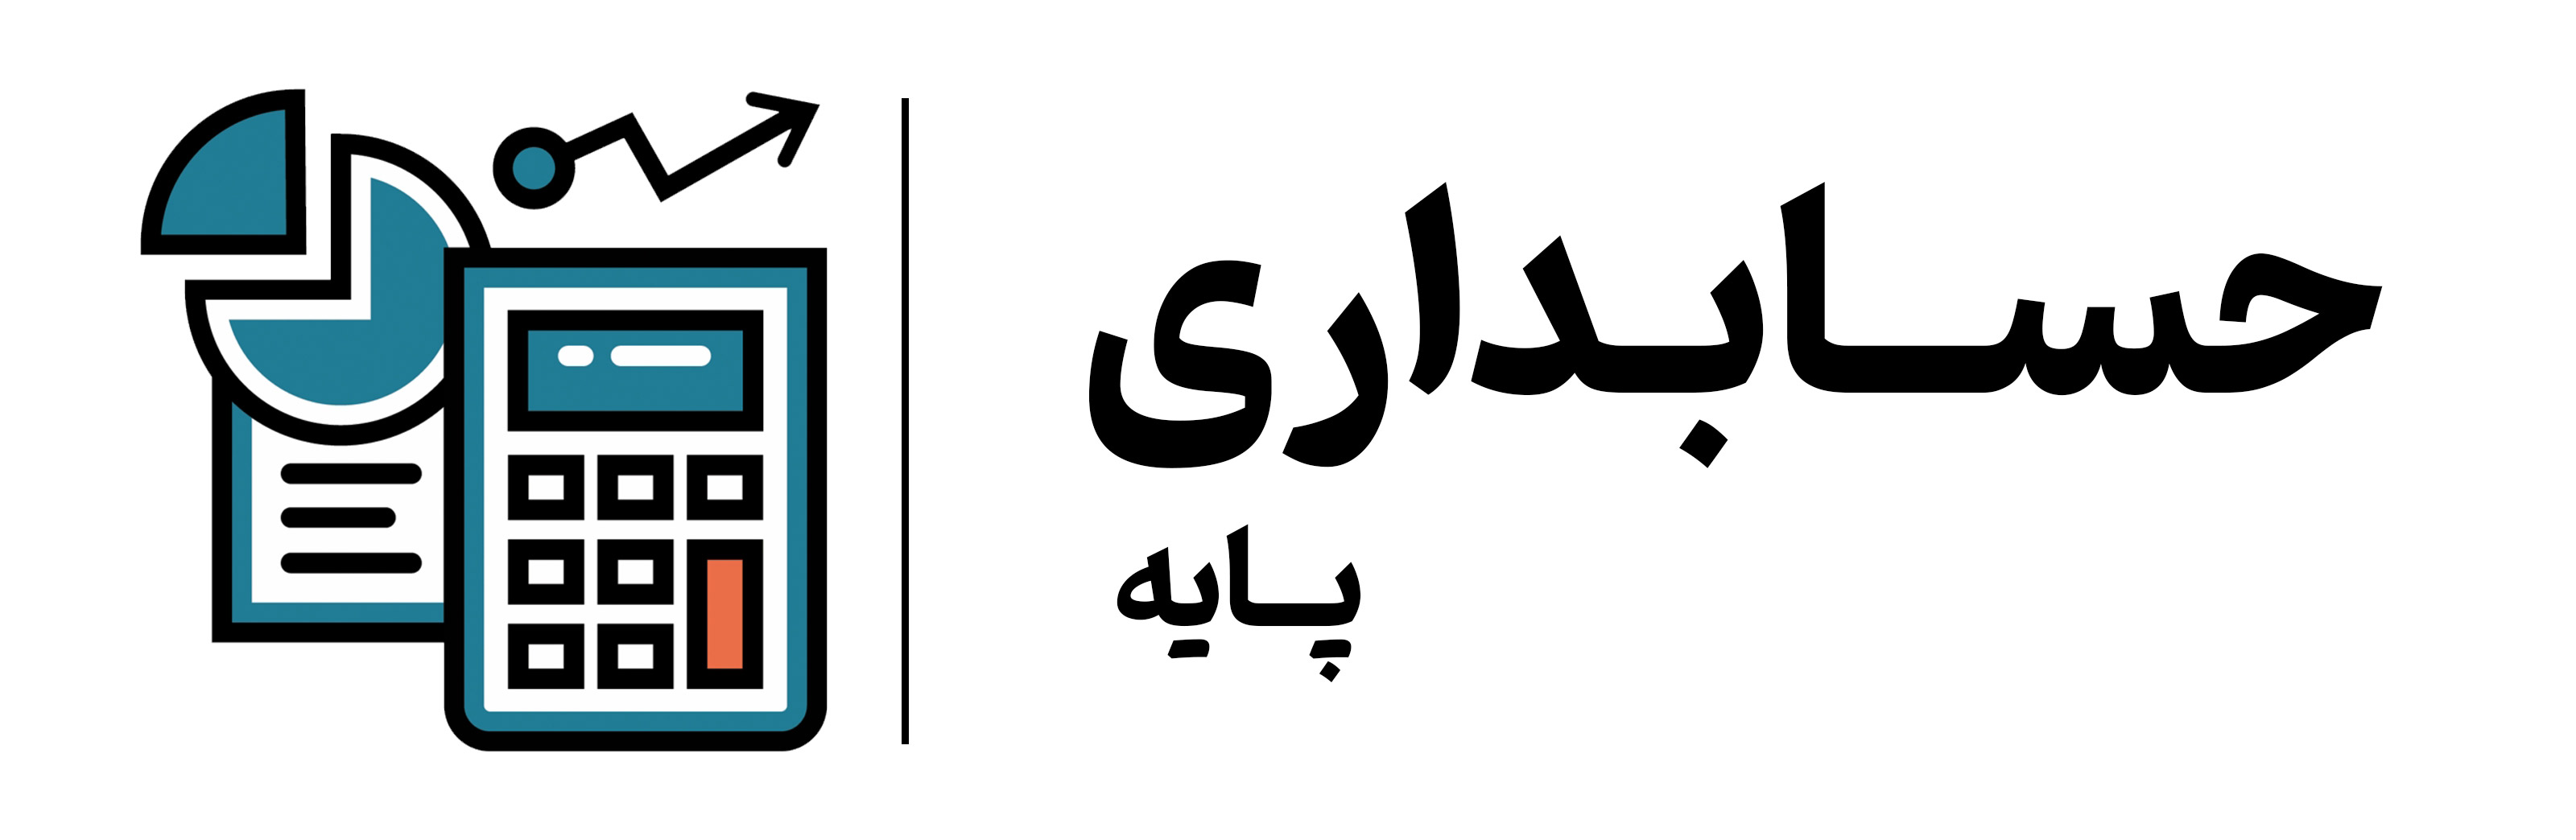 آموزش حسابداری مقدماتی در آموزشگاه مهرگان اصفهان